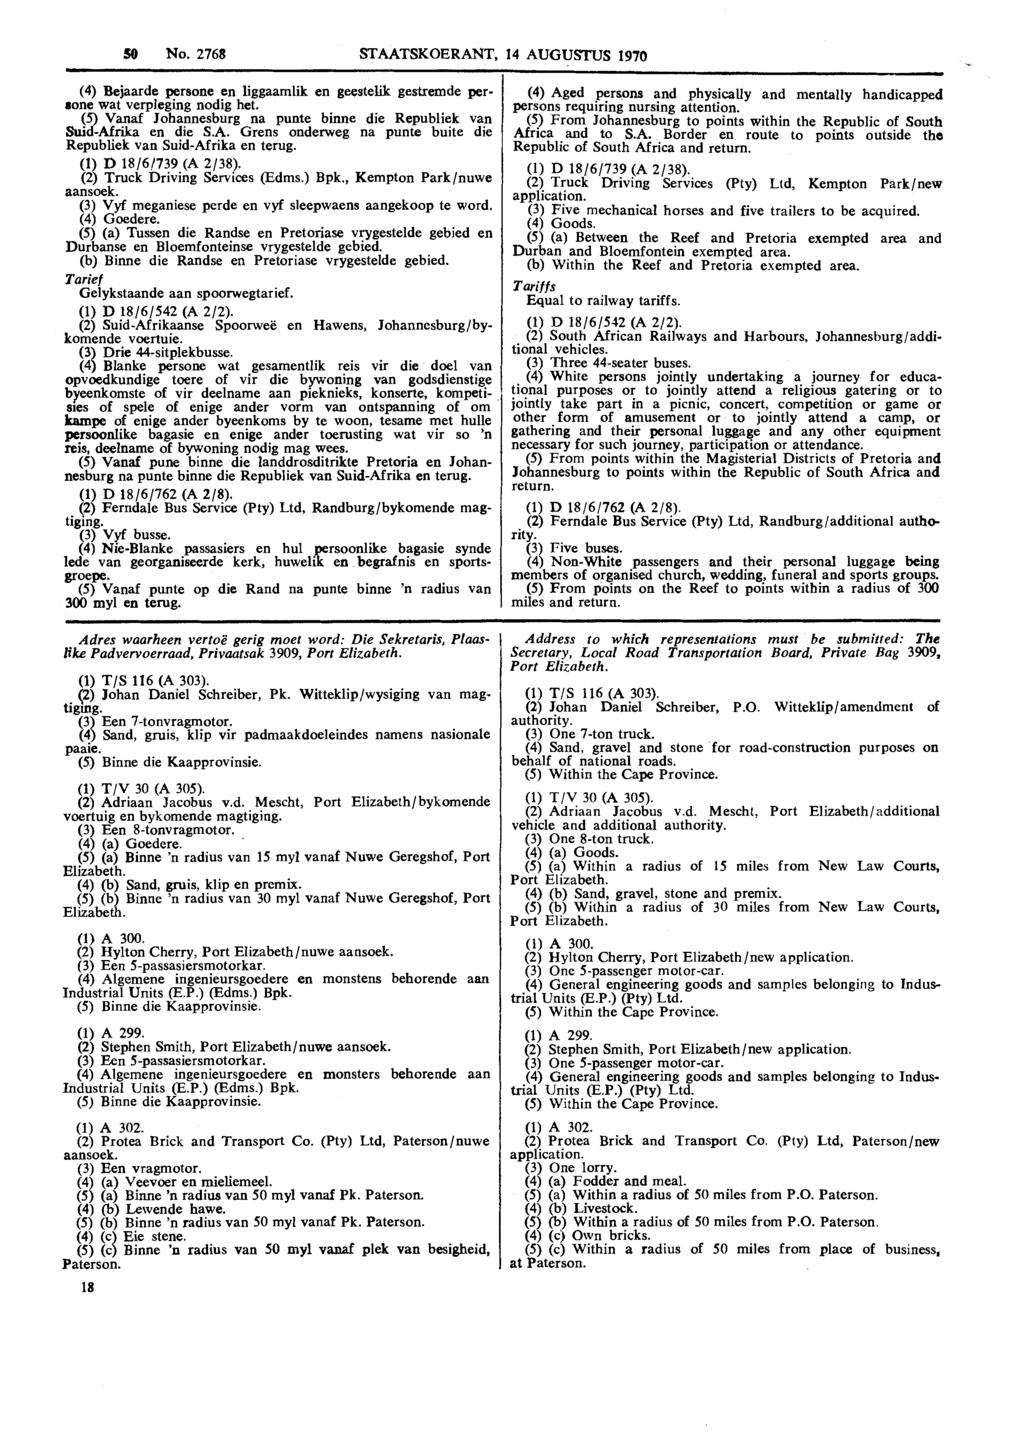 50 No. 2768 STAATSKOERANT, 14 AUGUSrZTS 1970 (4) Bejaarde persone en liggaamlik en geestem gestremde perrone wat verpleging nodig het.